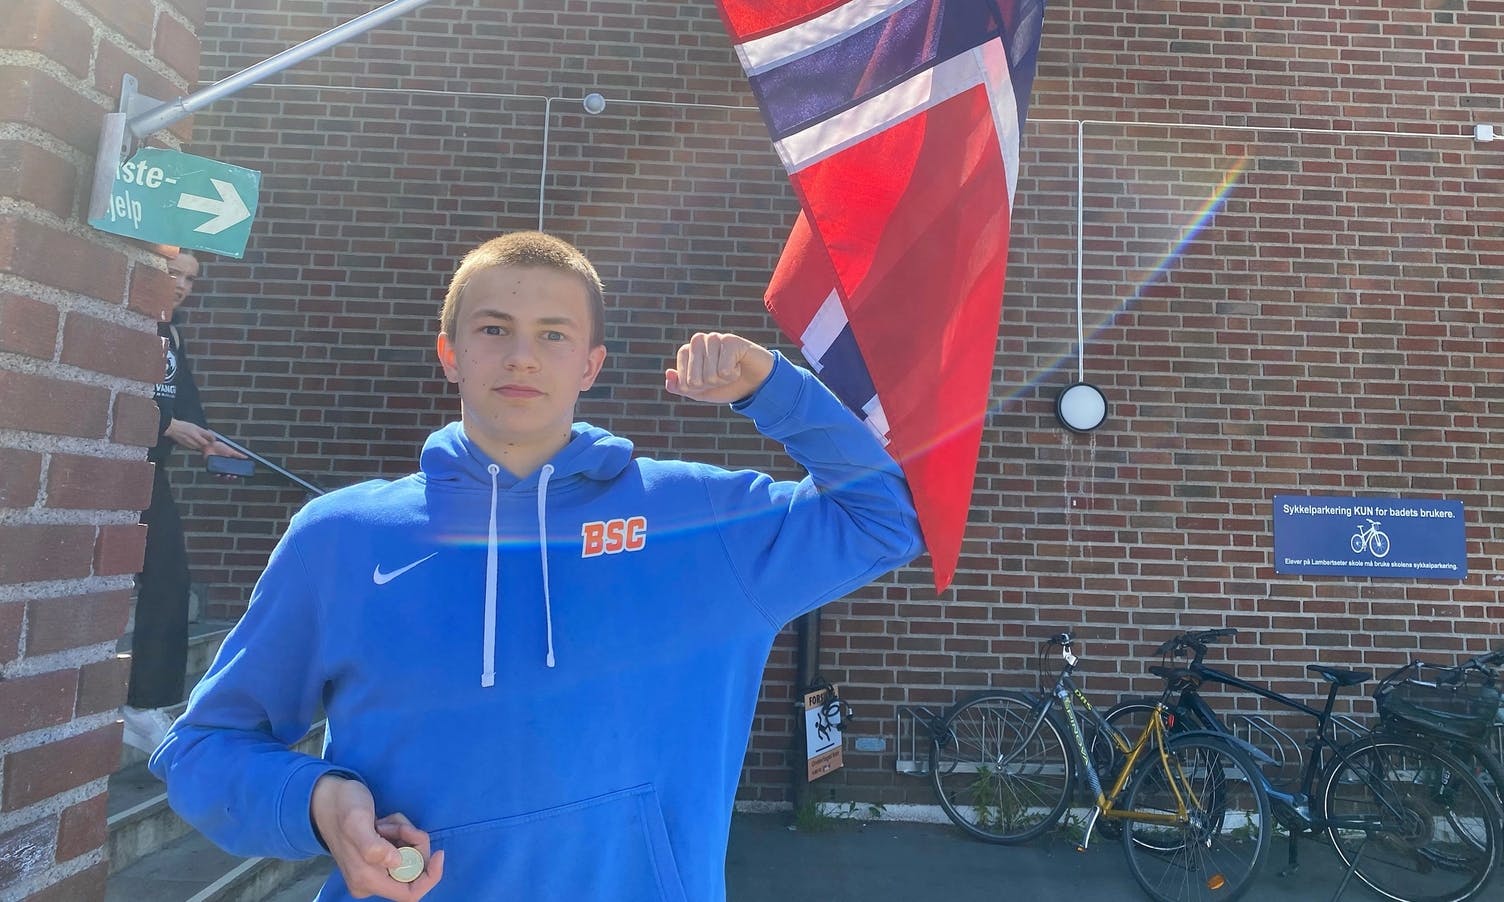 Jakob med 1. plass i ÅM - tatt ut til nordisk